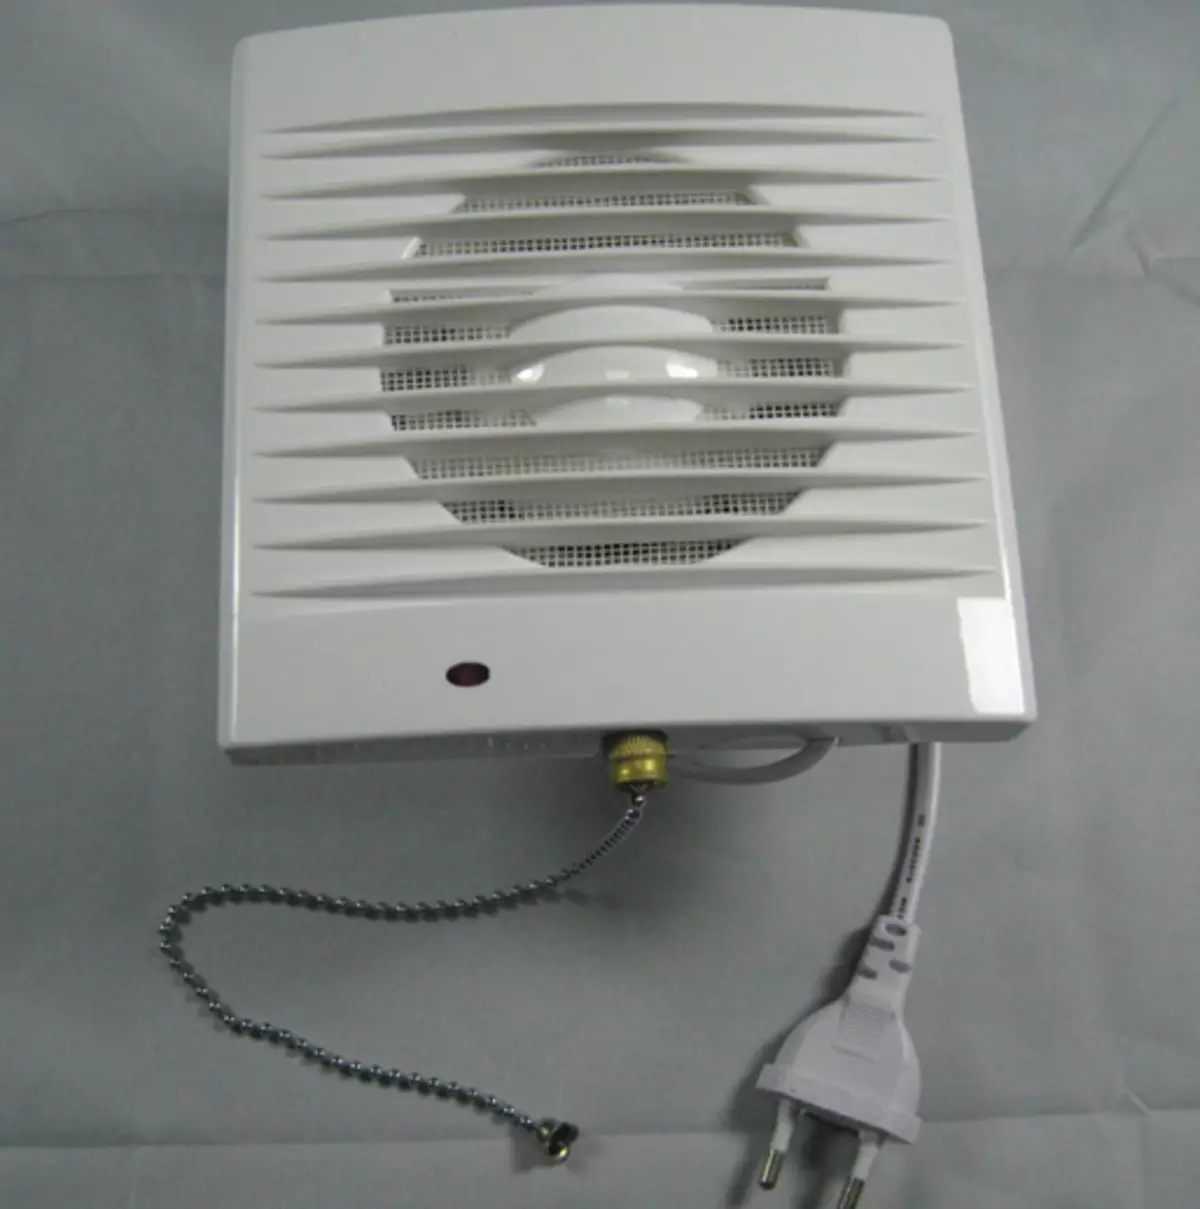 Ventilator u toalet: ispušni ventilator s provjerom ventila i tihi stropni ventilatori za kupaonice, ostale opcije. Što je bolje odabrati model? 10469_30